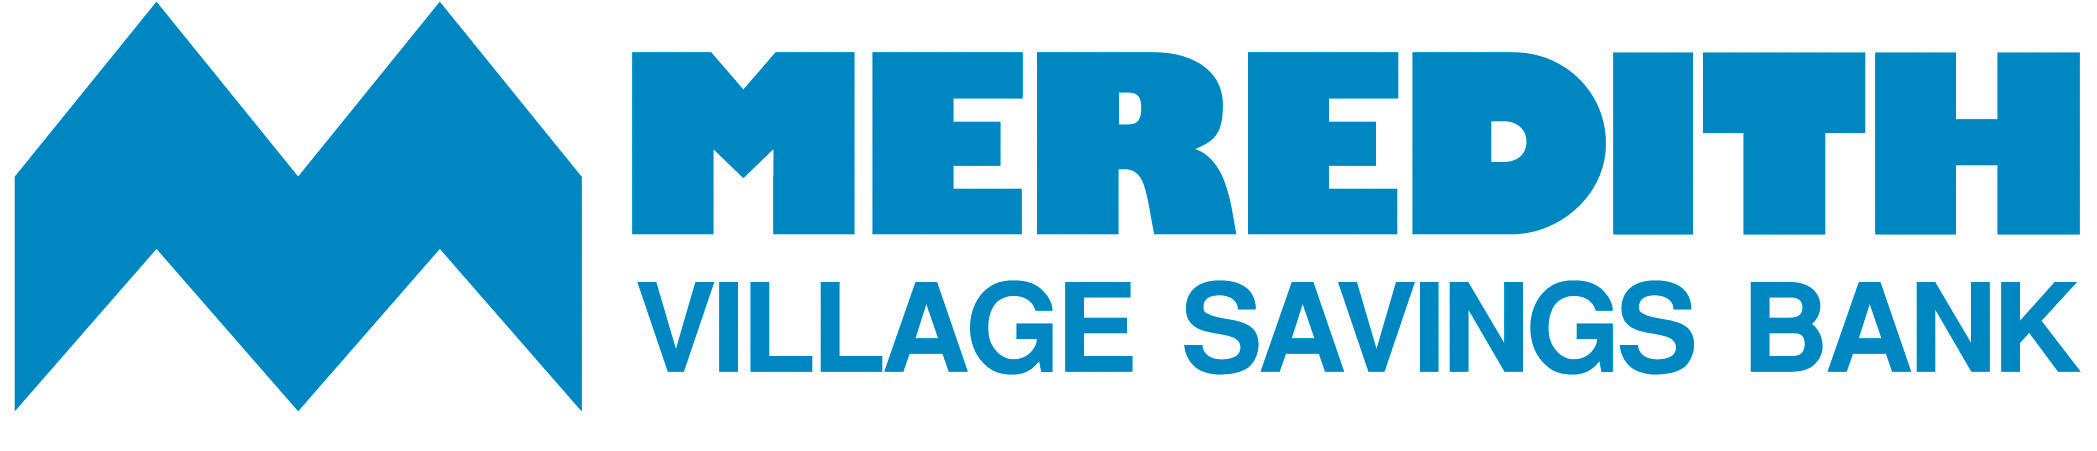 Meredith Village Savings Bank logo